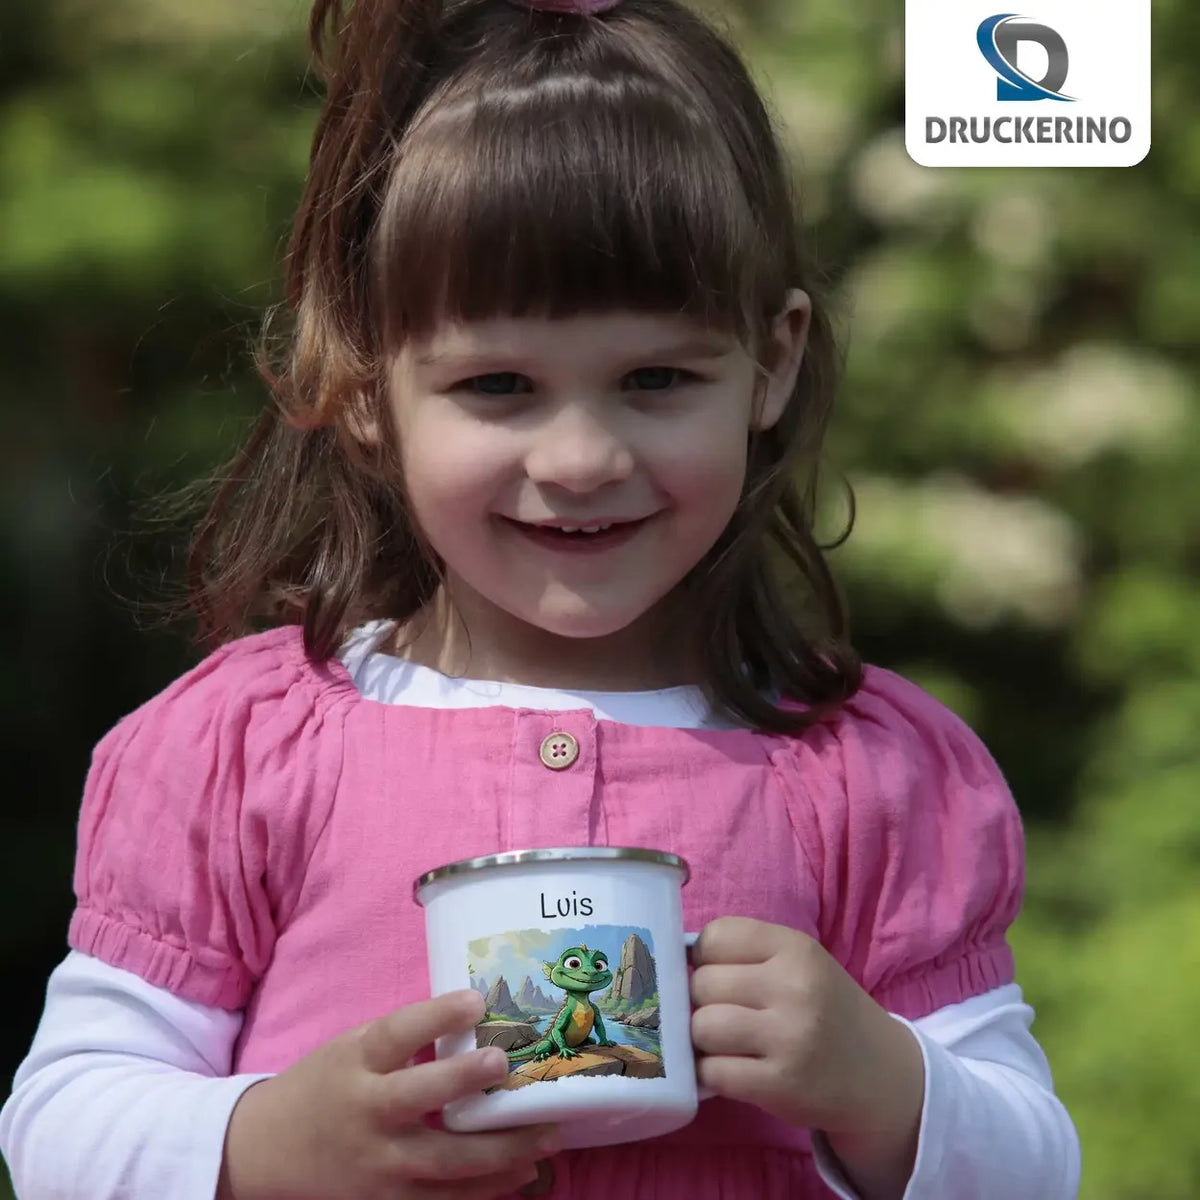 Abenteuerlustige Drachen Emaille Tasse für Kinder personalisiert Emailletasse Druckerino   